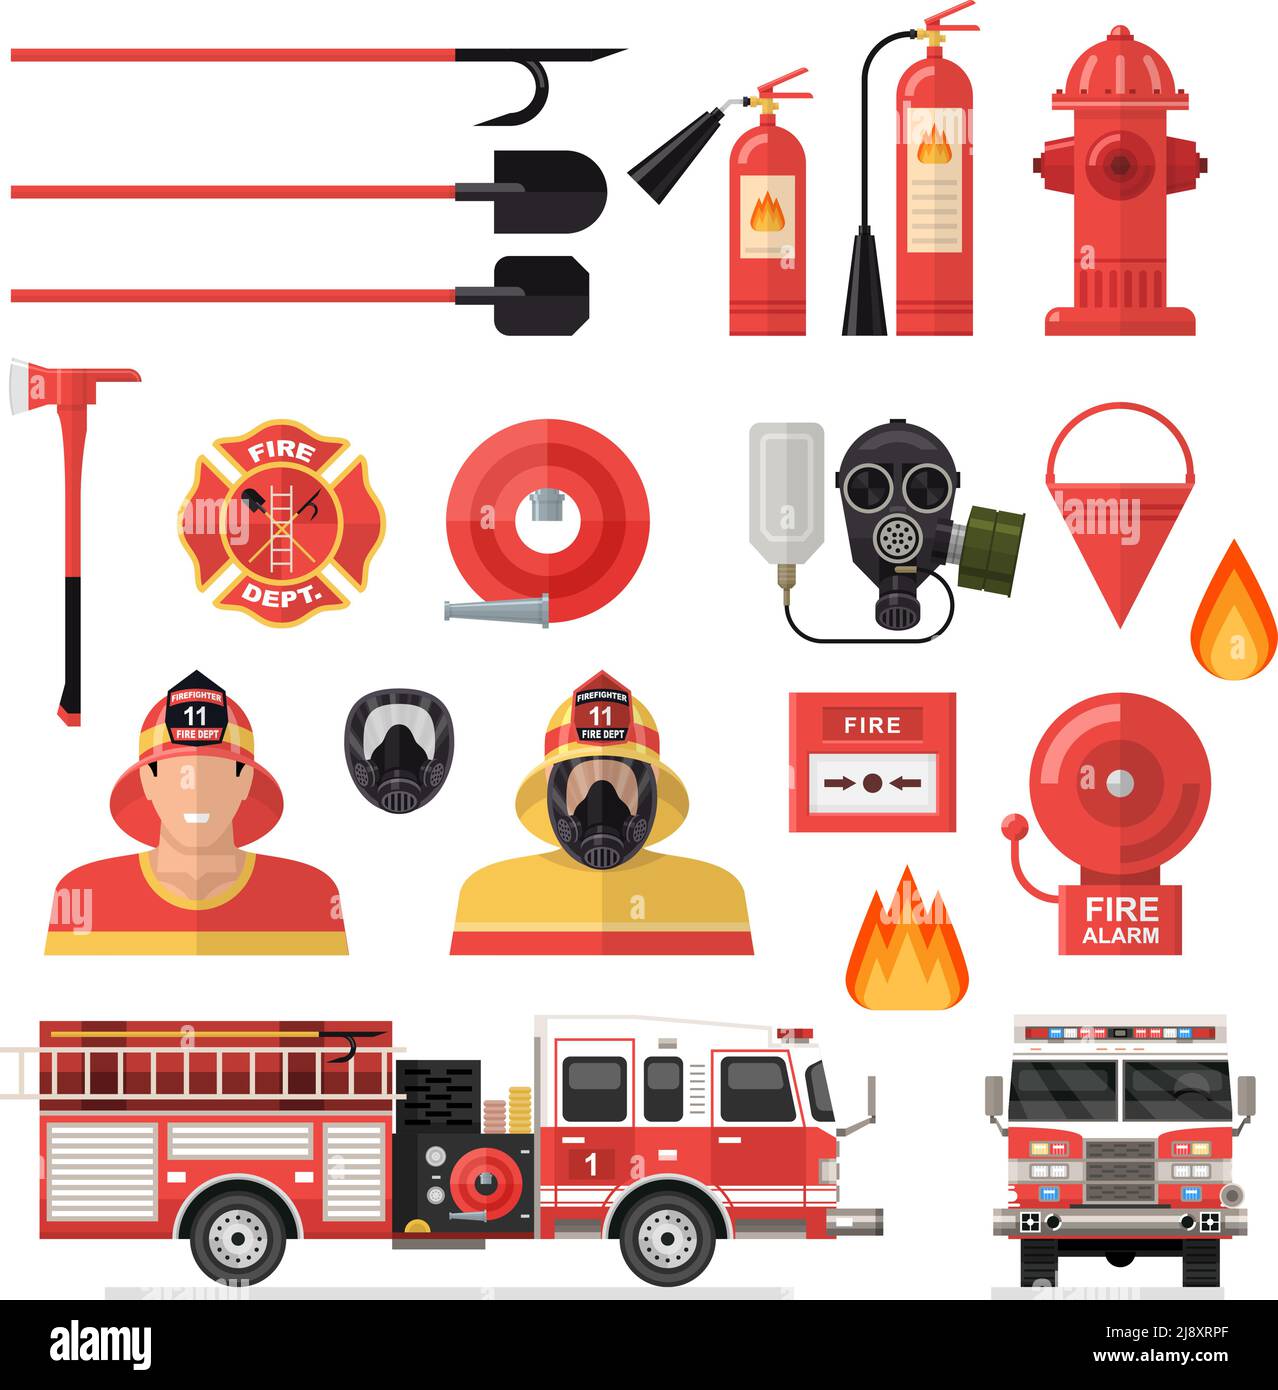 Pompiers avec accessoires